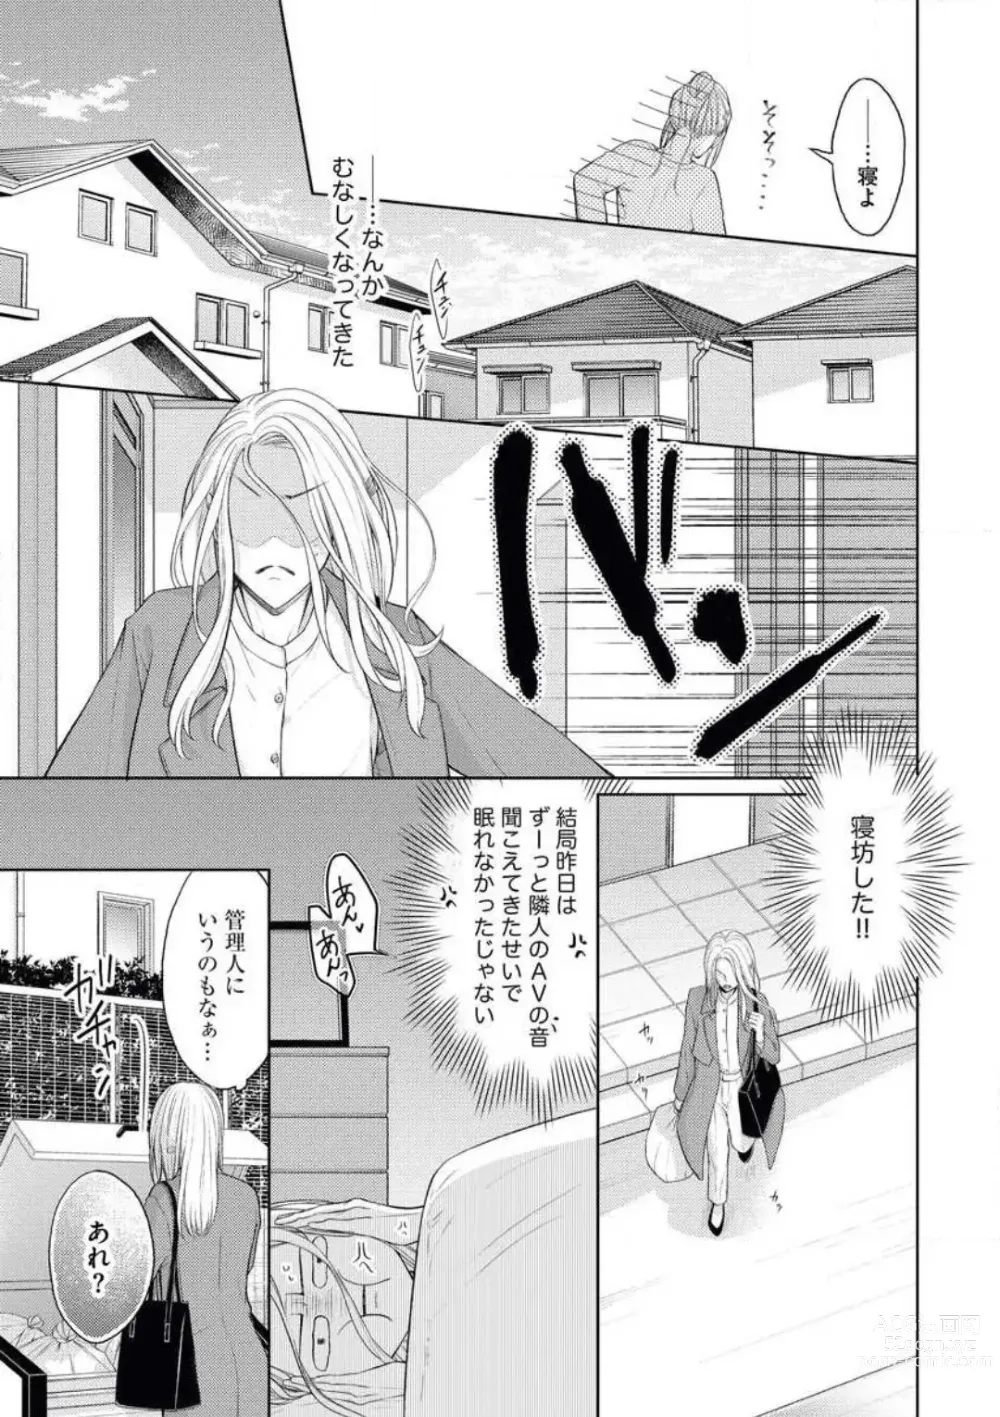 Page 5 of manga Mitsu Koi Maisonette